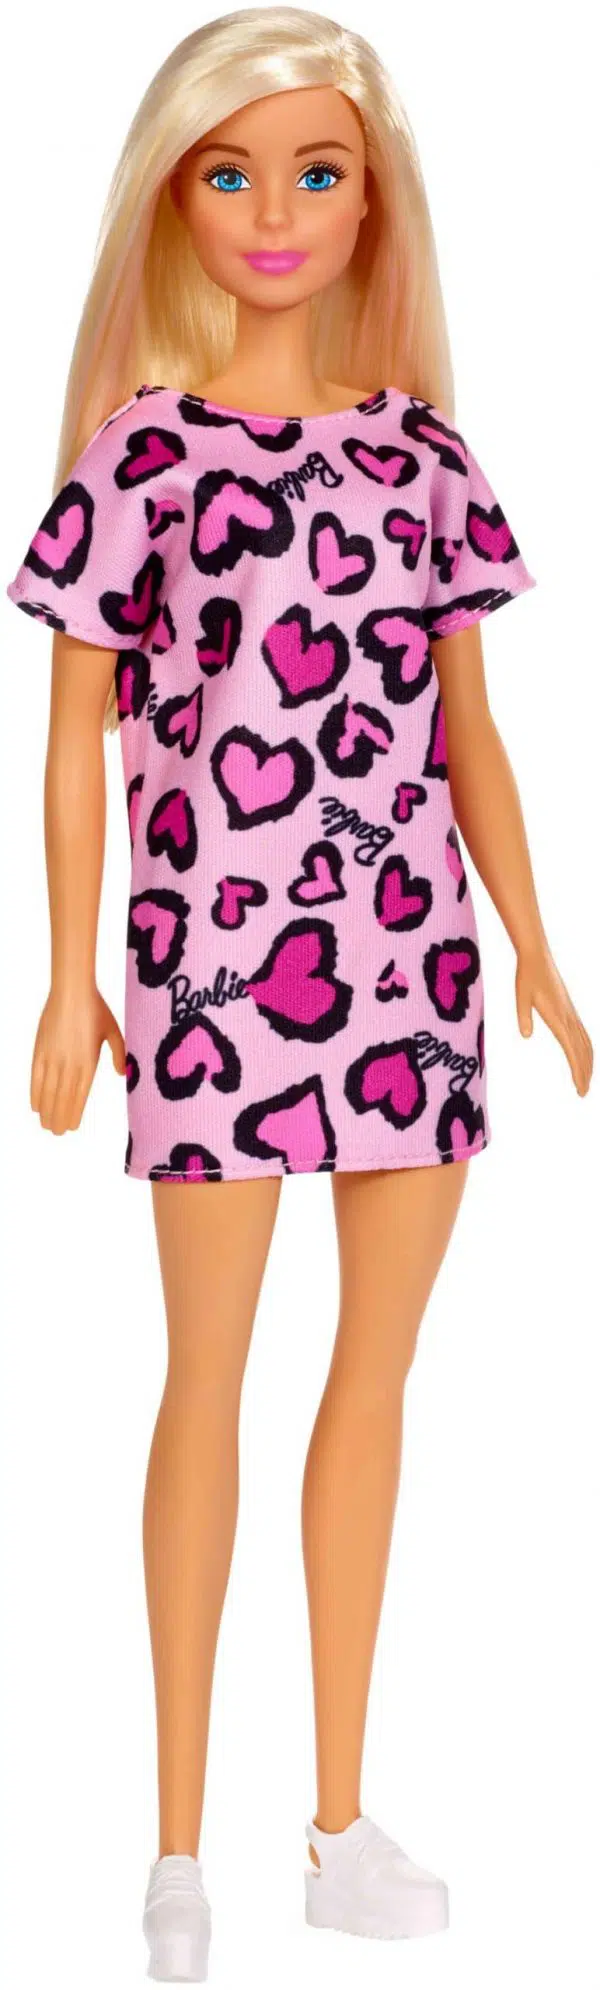 ברבי שיק - בובת ברבי אופנתית עם חצאית לבבות בצבעים